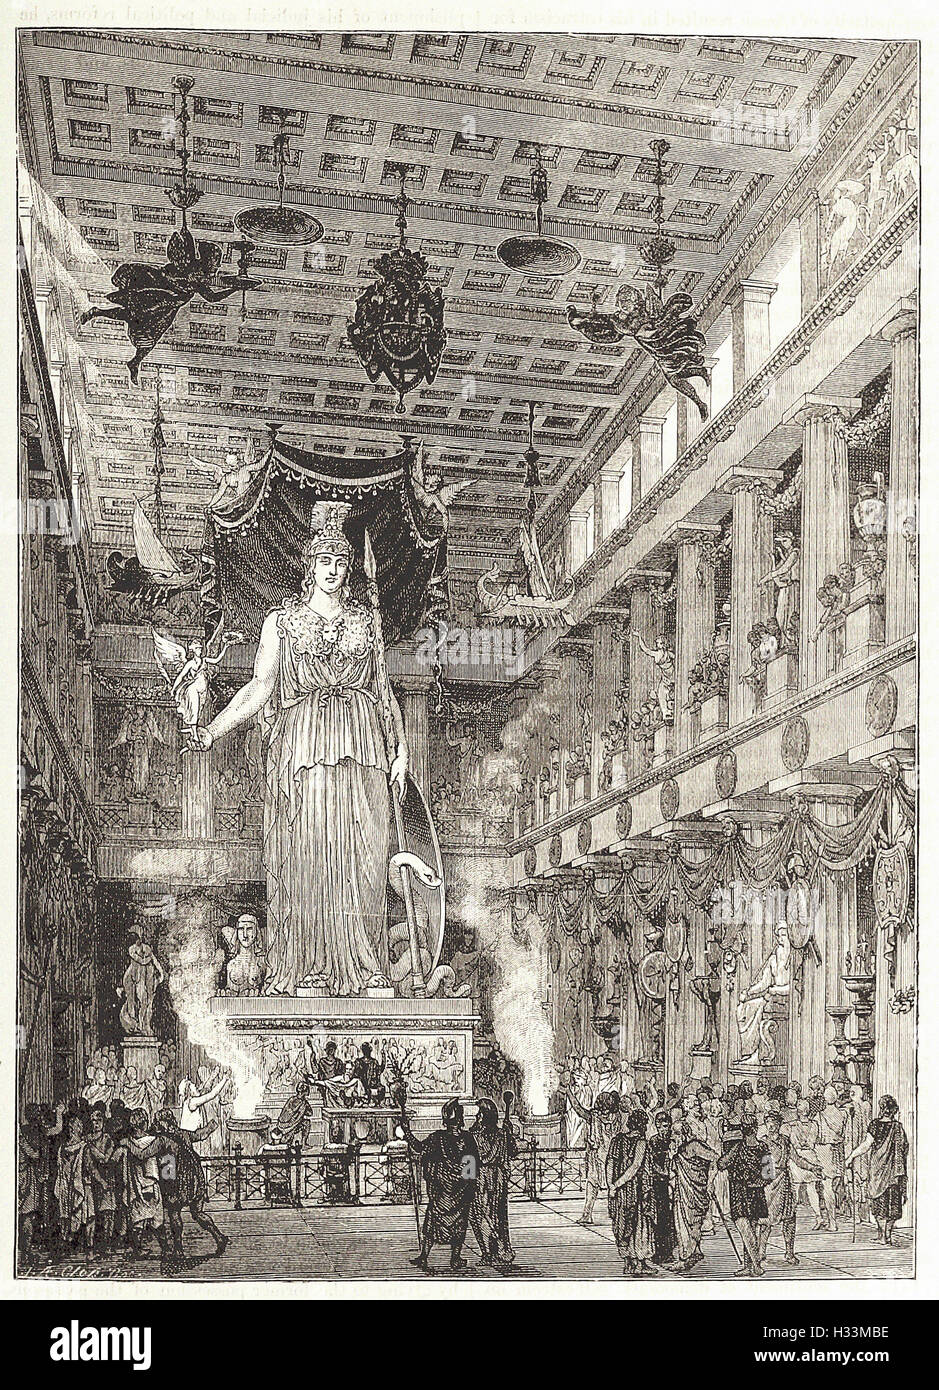 L'INTÉRIEUR DU PARTHÉNON, restauré - de 'Cassell's Illustrated Histoire universelle" - 1882 Banque D'Images